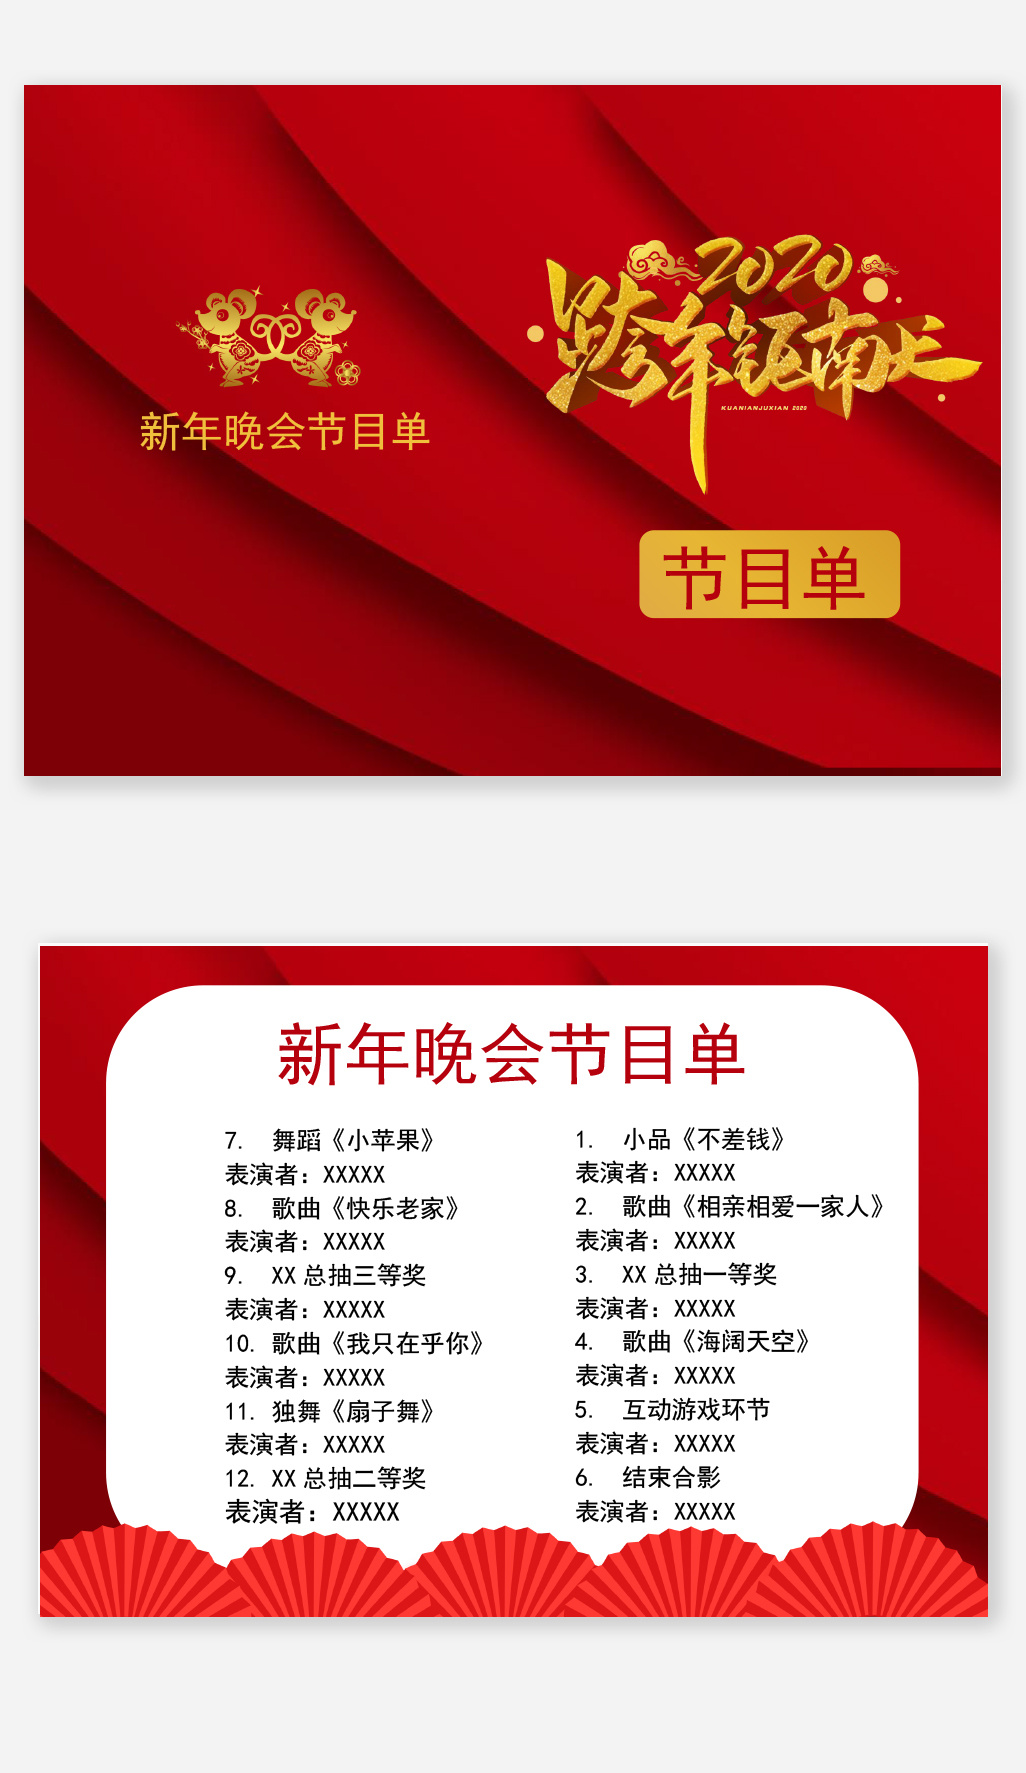 Jiangsu Satellite TV New Year's Eve Concert 2021 List ZNDS TECH info